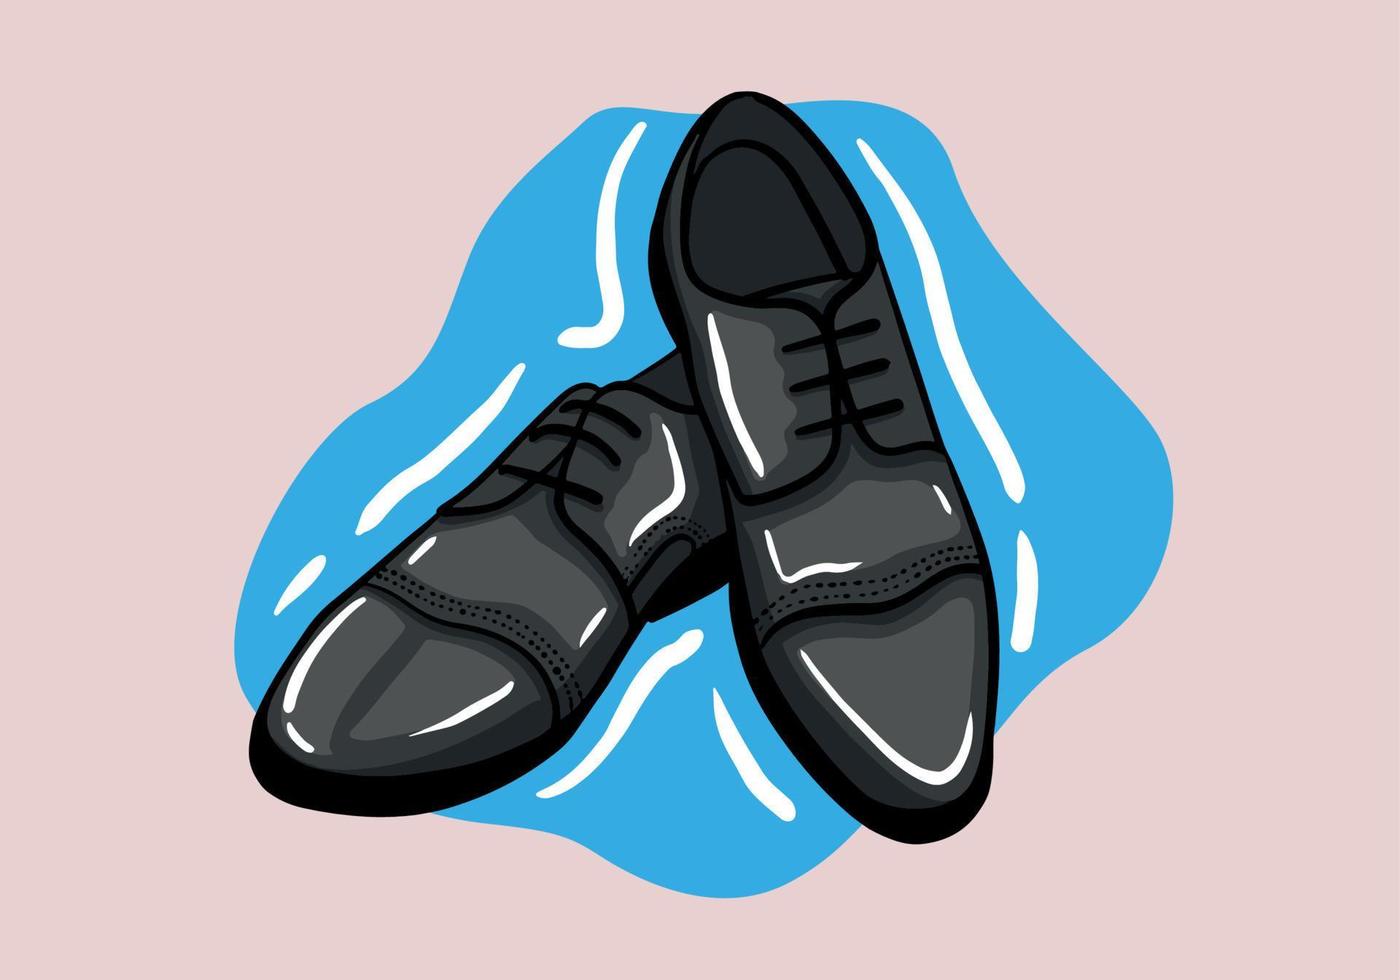 schwarz Herren glänzend Patent Leder Schuhe. Vektor Hand gezeichnet Illustration von ein isoliert Hintergrund.